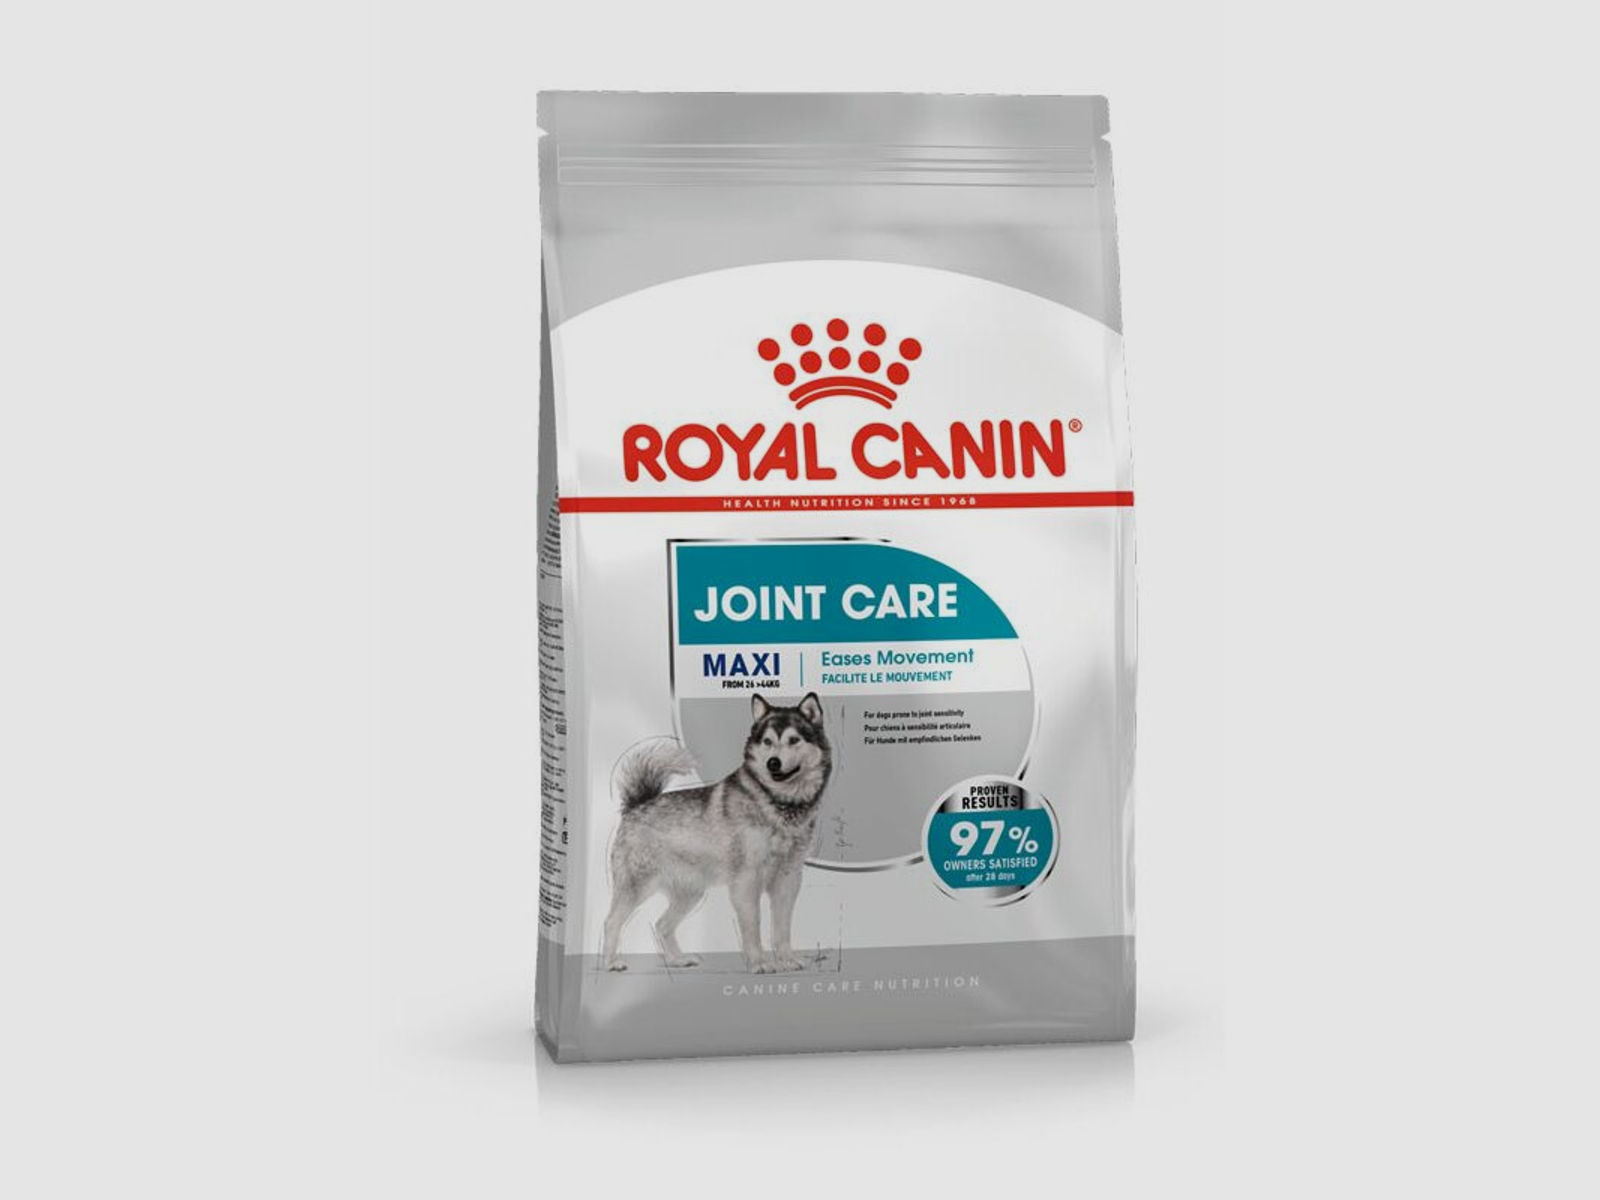 ROYAL CANIN Große Hunde Trockenfutter Joint Care für empfindliche Gelenke 10 Kg